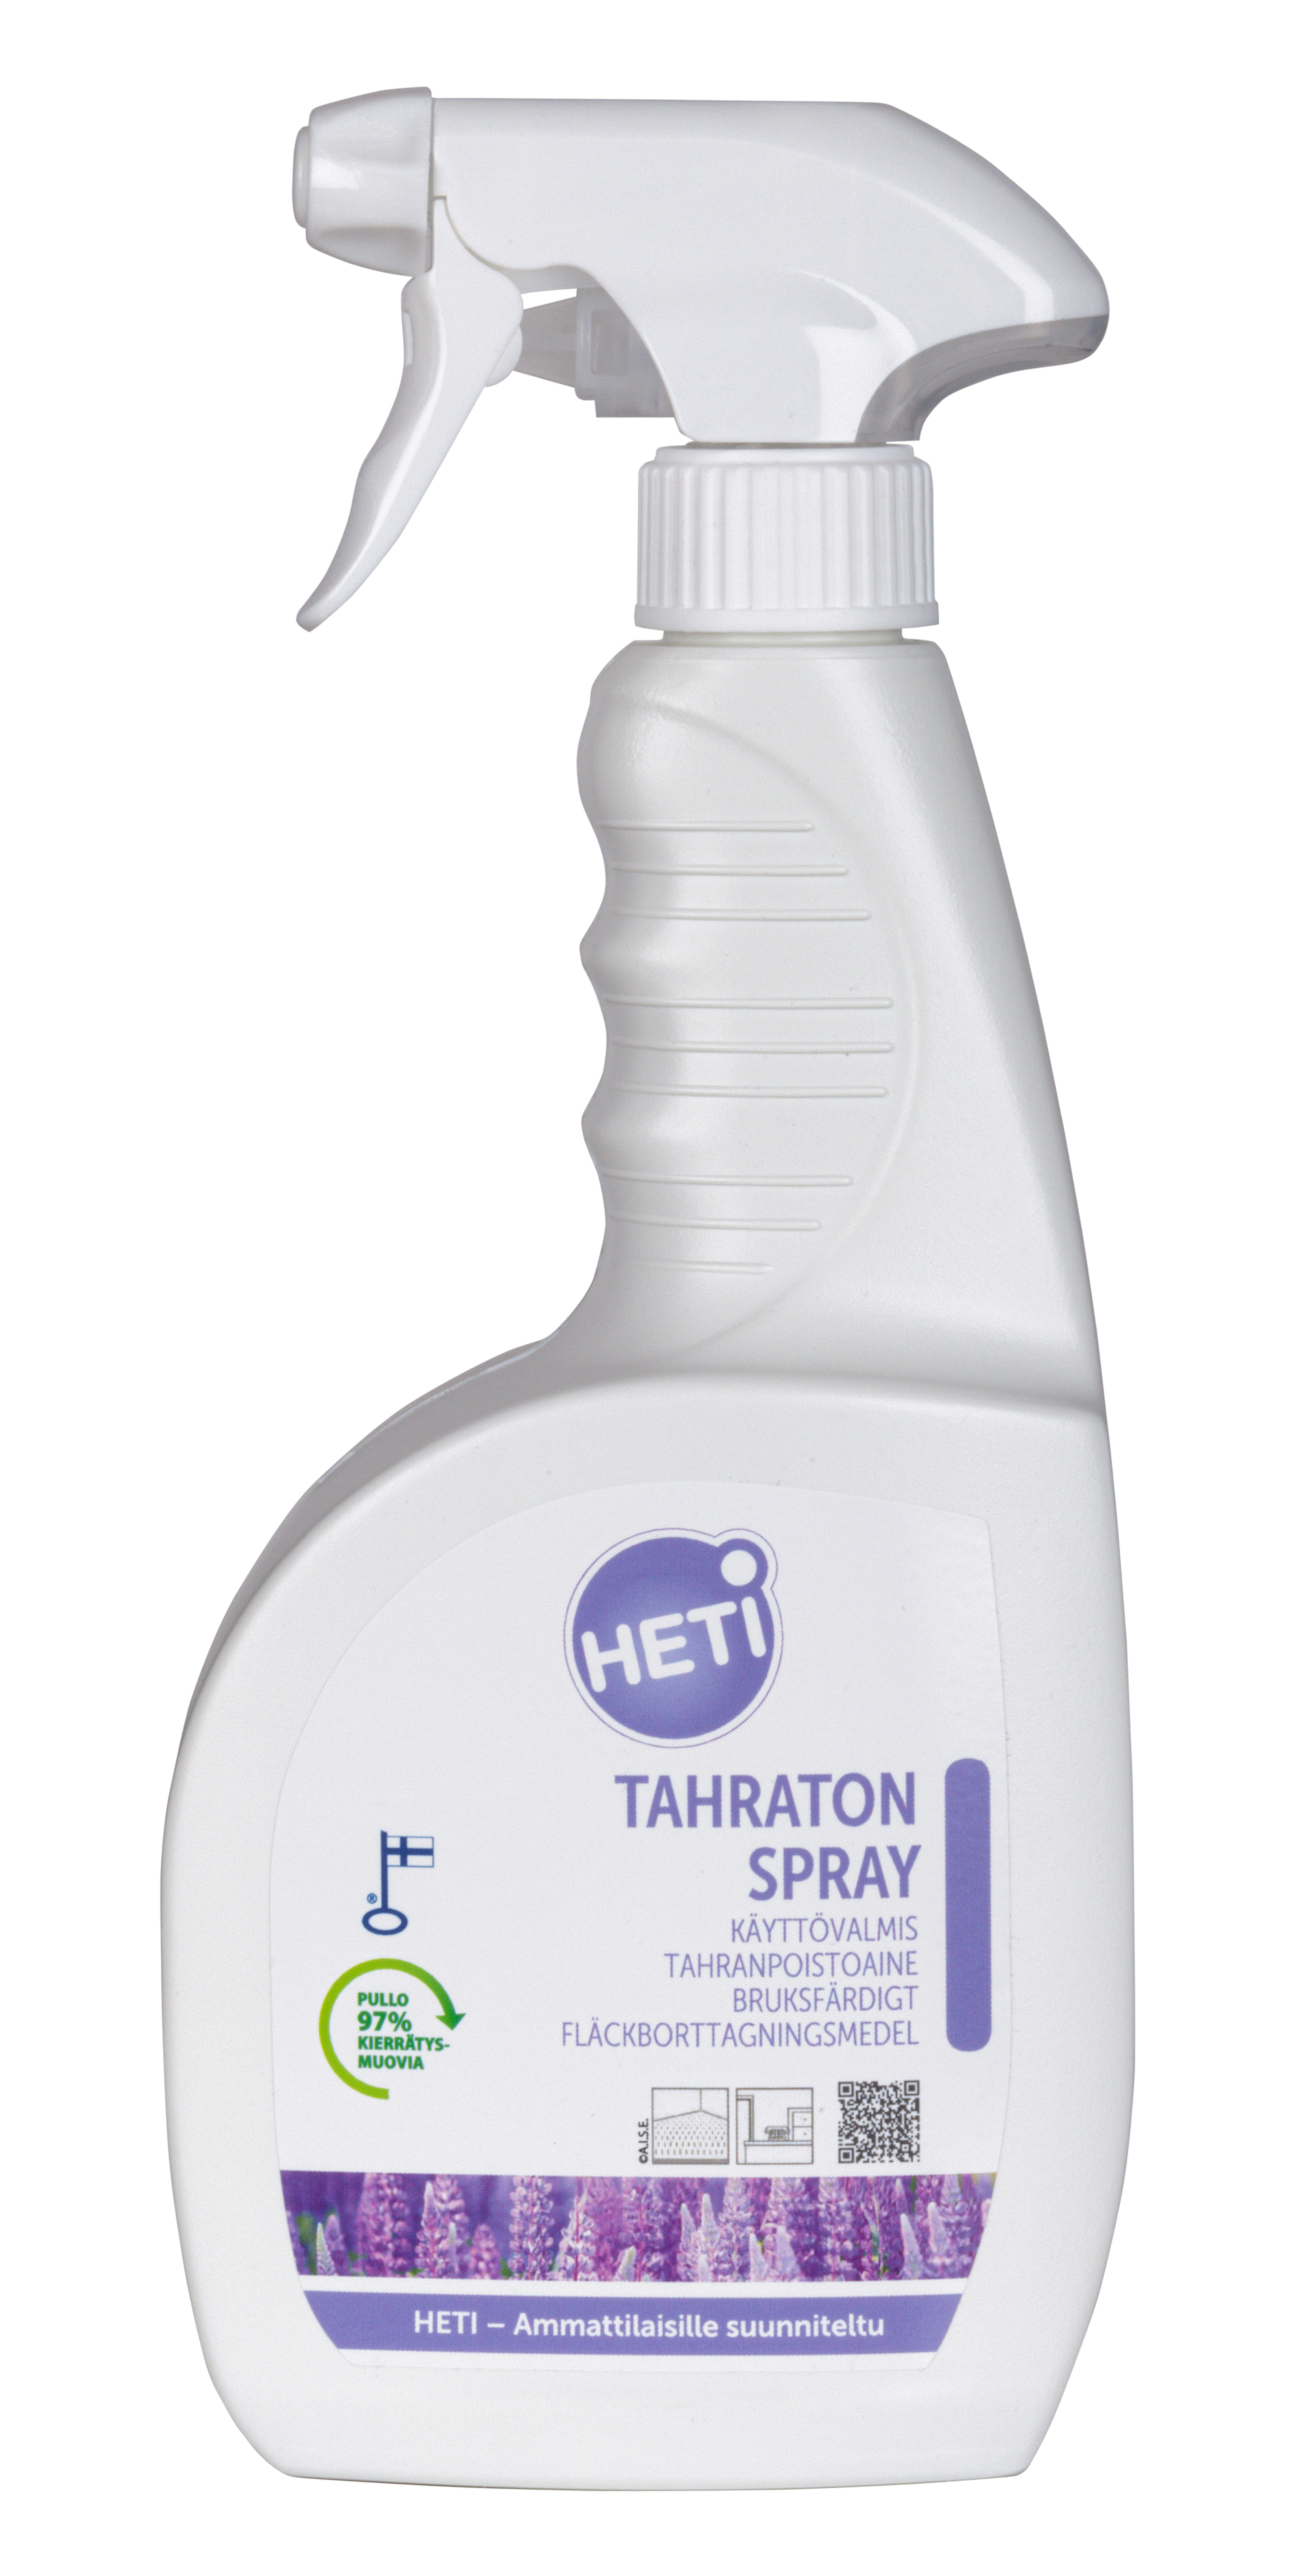 Heti Tahraton Spray 750ml Image